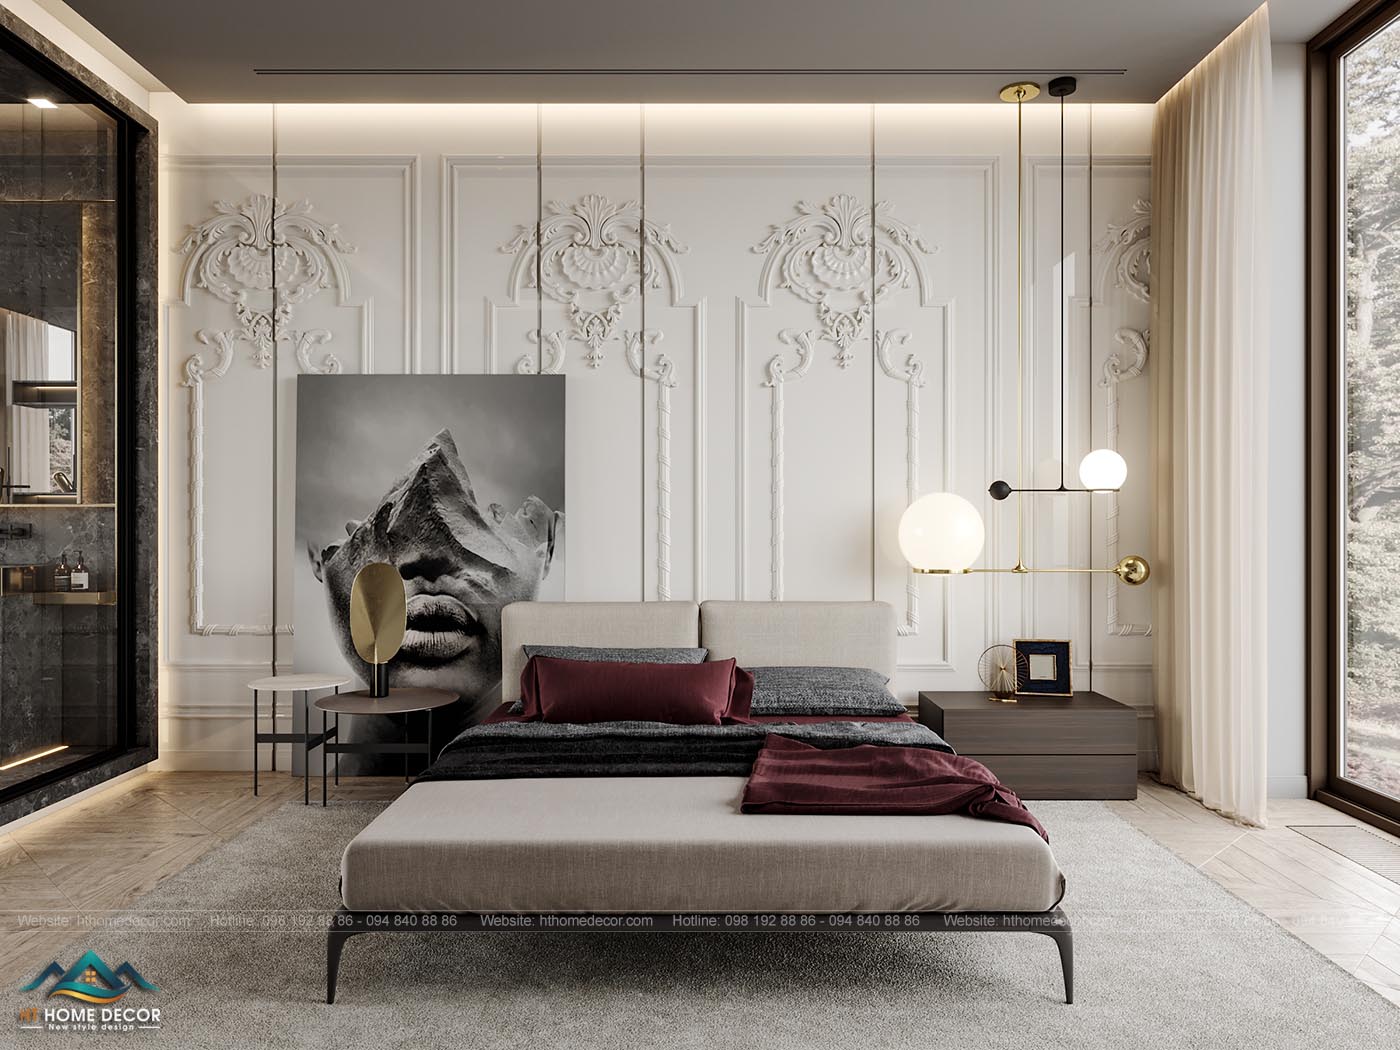 Phòng ngủ với tường được thiết kế hoa văn tinh tế, đem lại sự đẳng cấp cho thiết kế nội thất chung cư